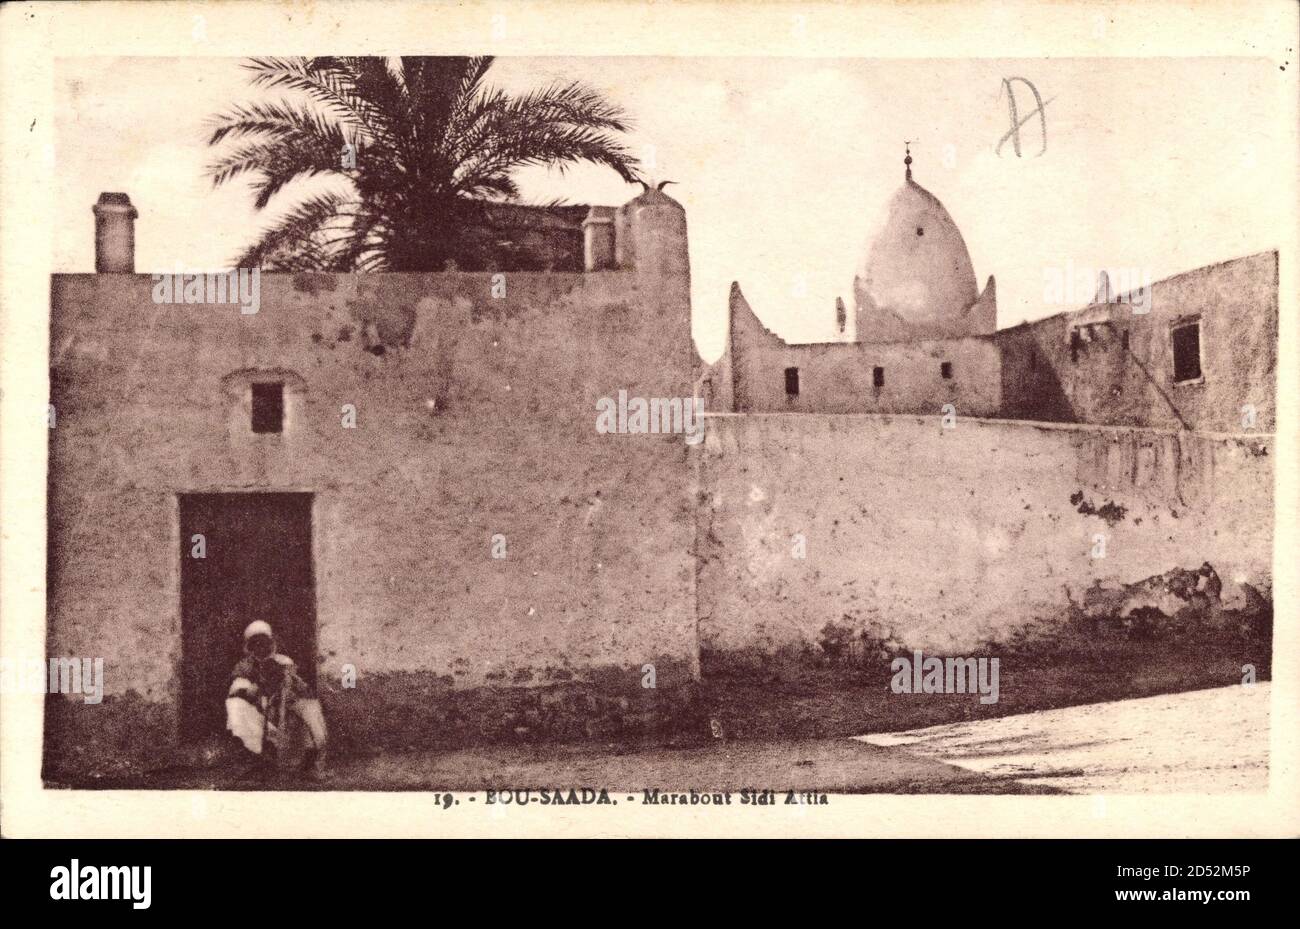 Bou Saada Algerien, Marabout Sidi Attia, Religiöse Stätte | usage worldwide Stock Photo